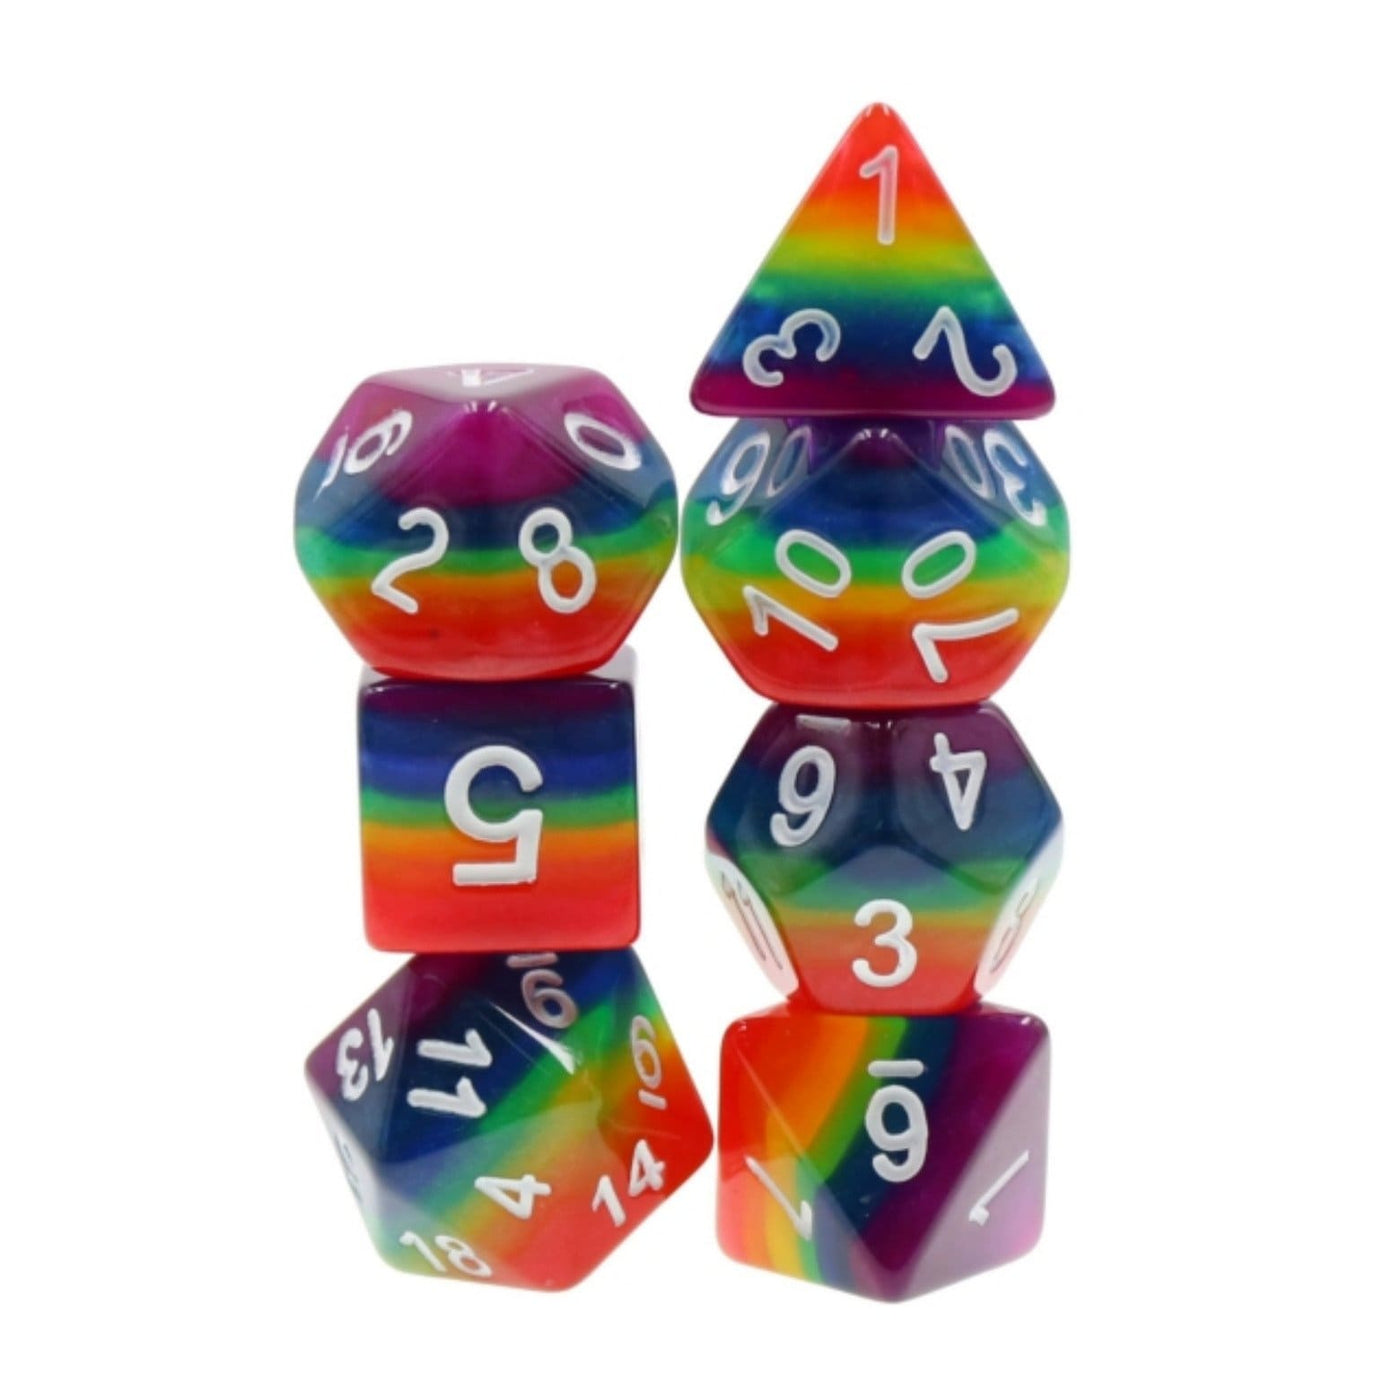 Rainbow Dice RPG Dice Set Plastic Dice Foam Brain Games